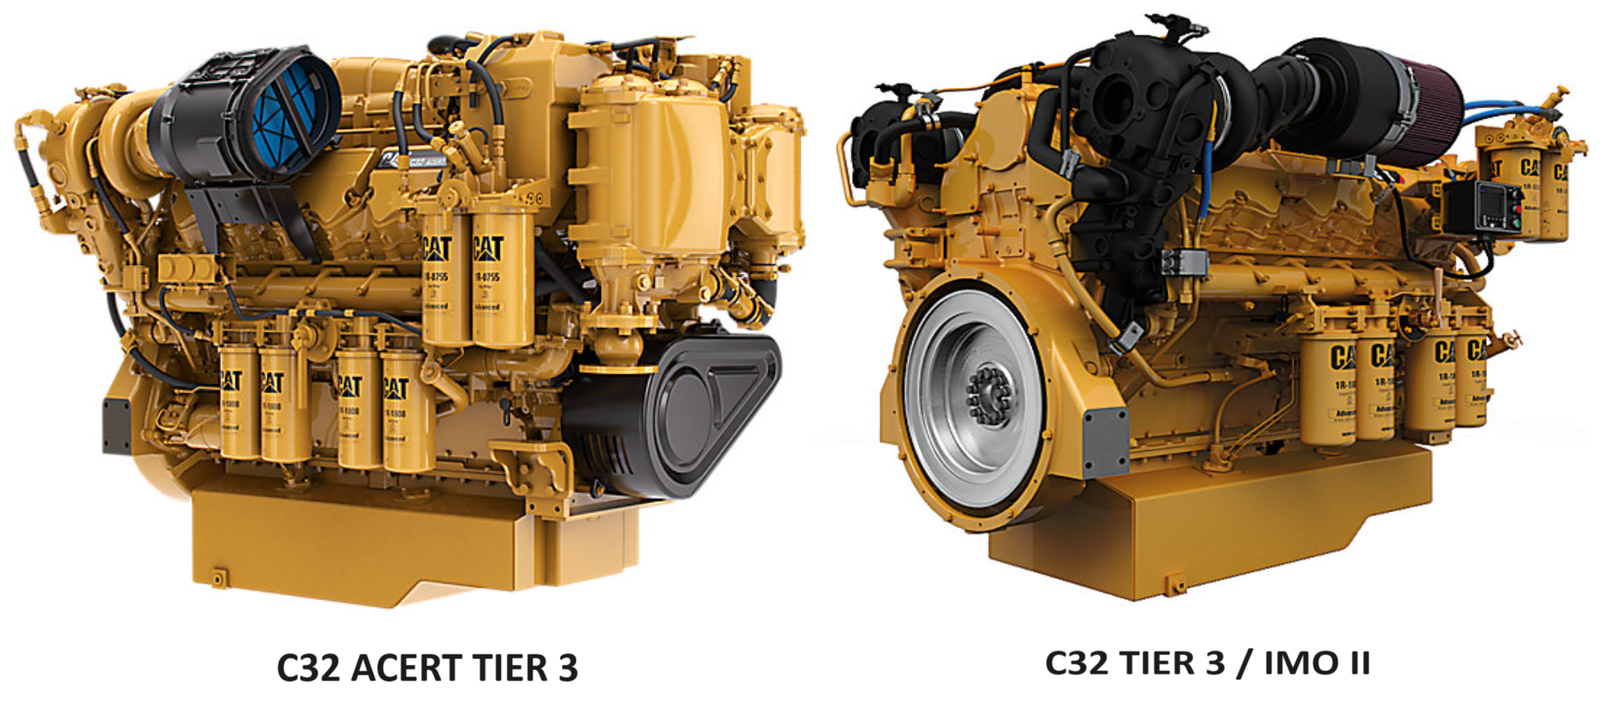 Cat C32 Engine